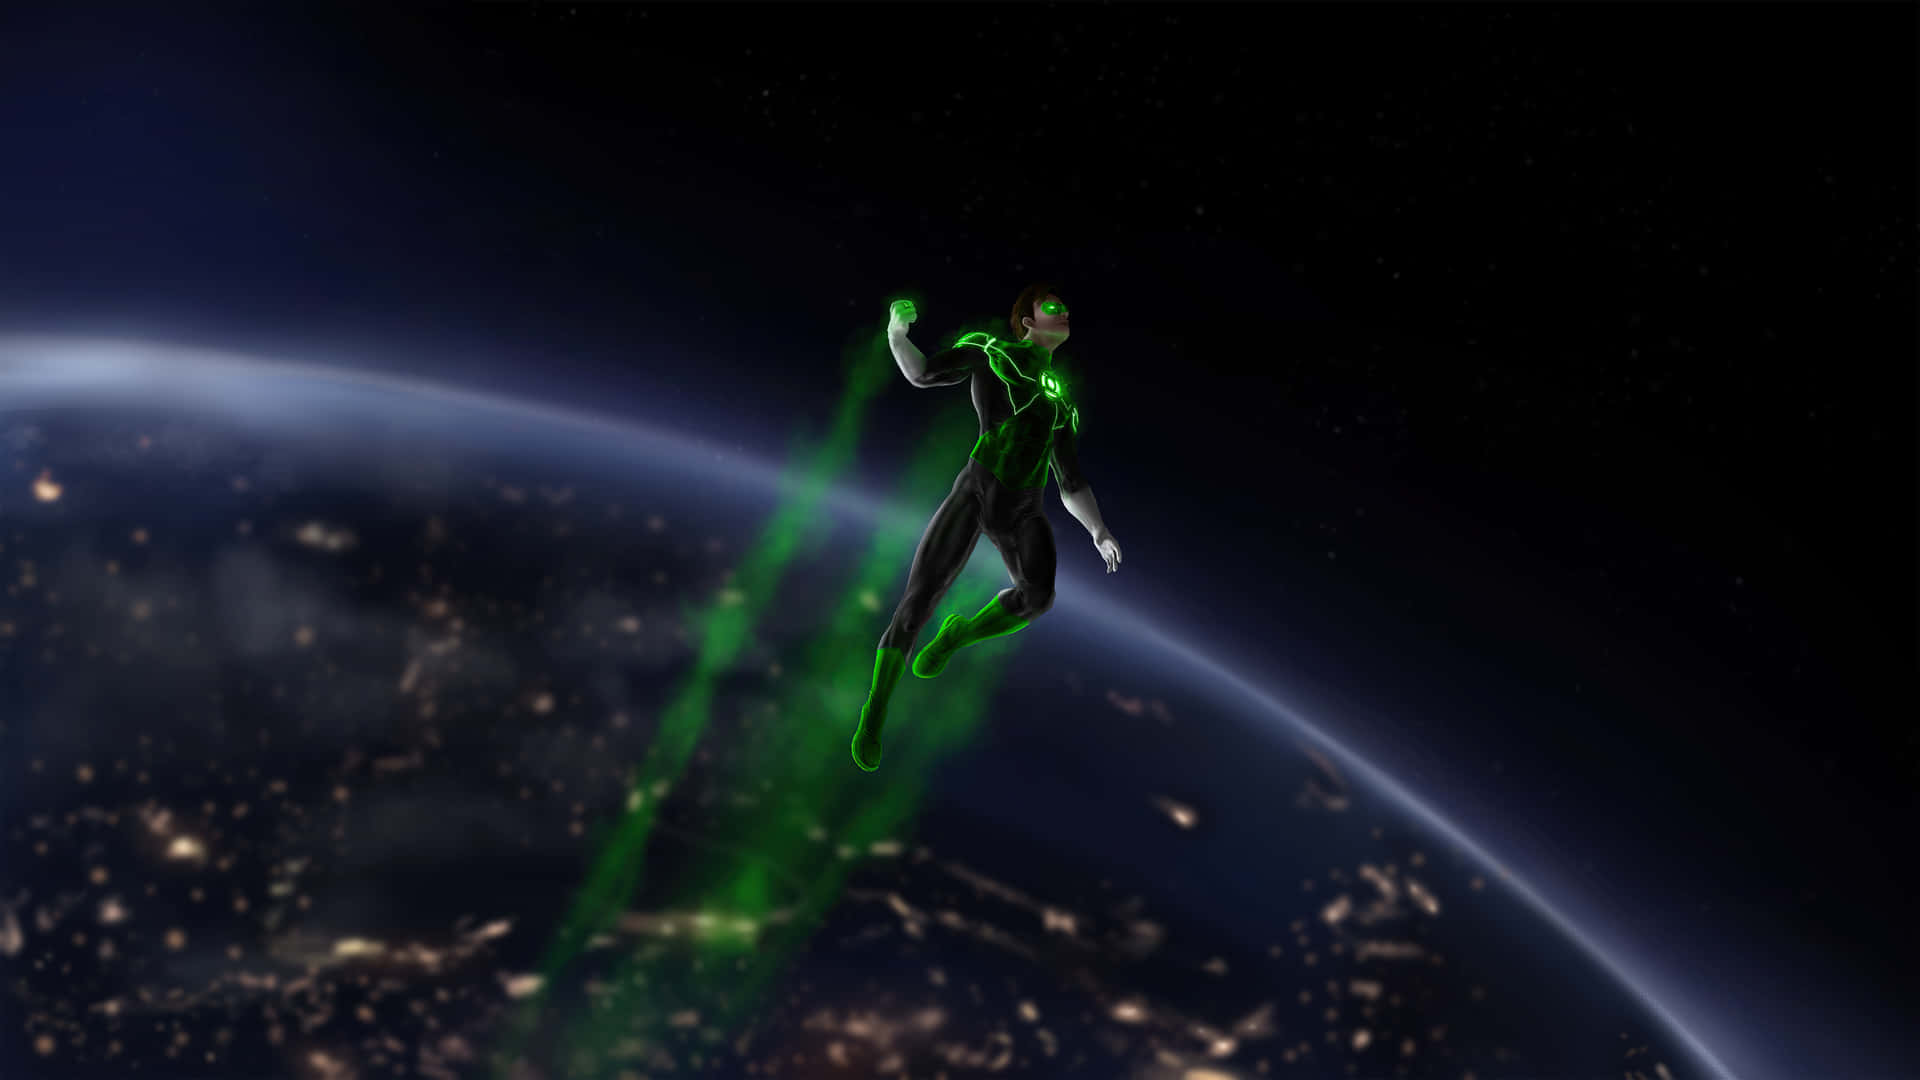 Hintergrundmit Dem Dc Superhelden Green Lantern